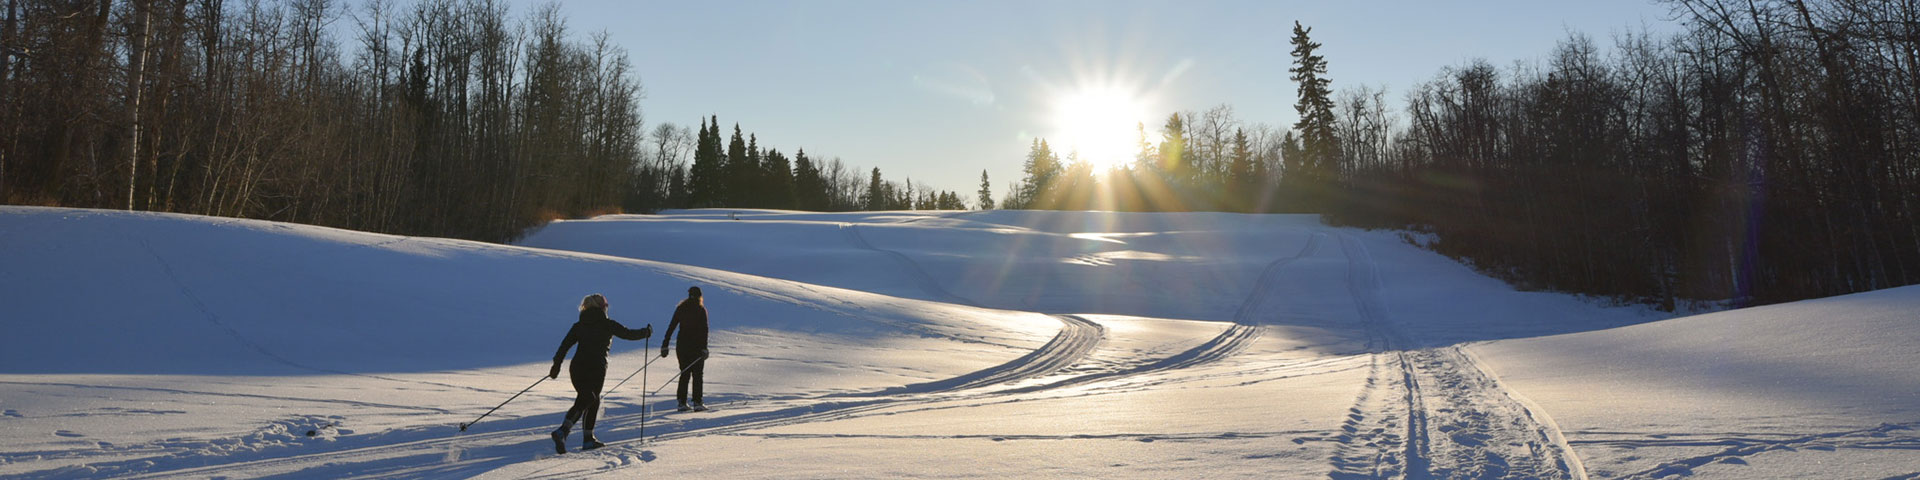 Un skieur de fond se déplace en descente sur une piste damée alors que le soleil commence à se coucher à la fin d’un jour d'hiver.